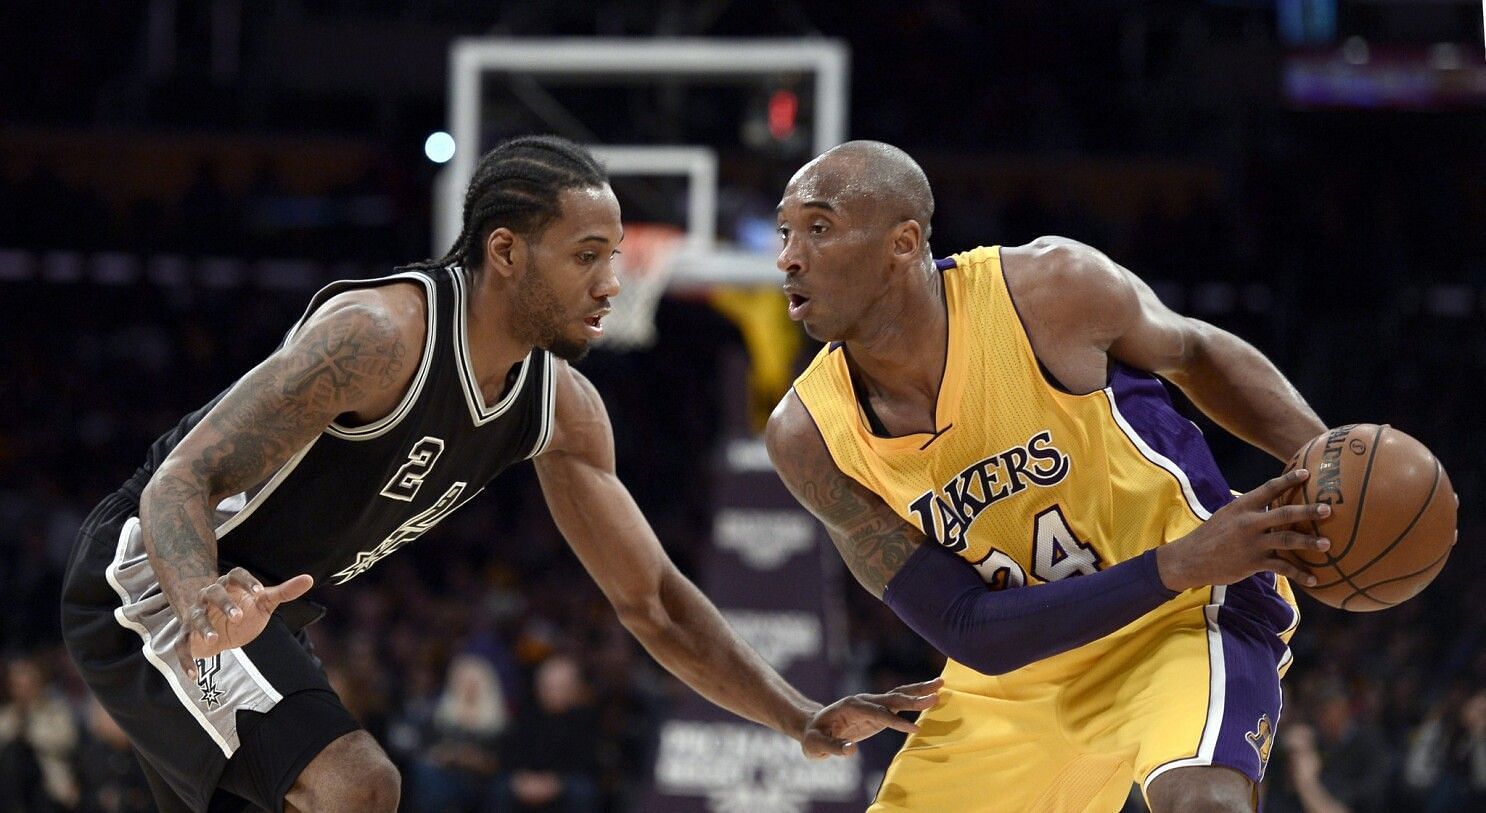 Kawhi Leonard guarding Kobe Bryant